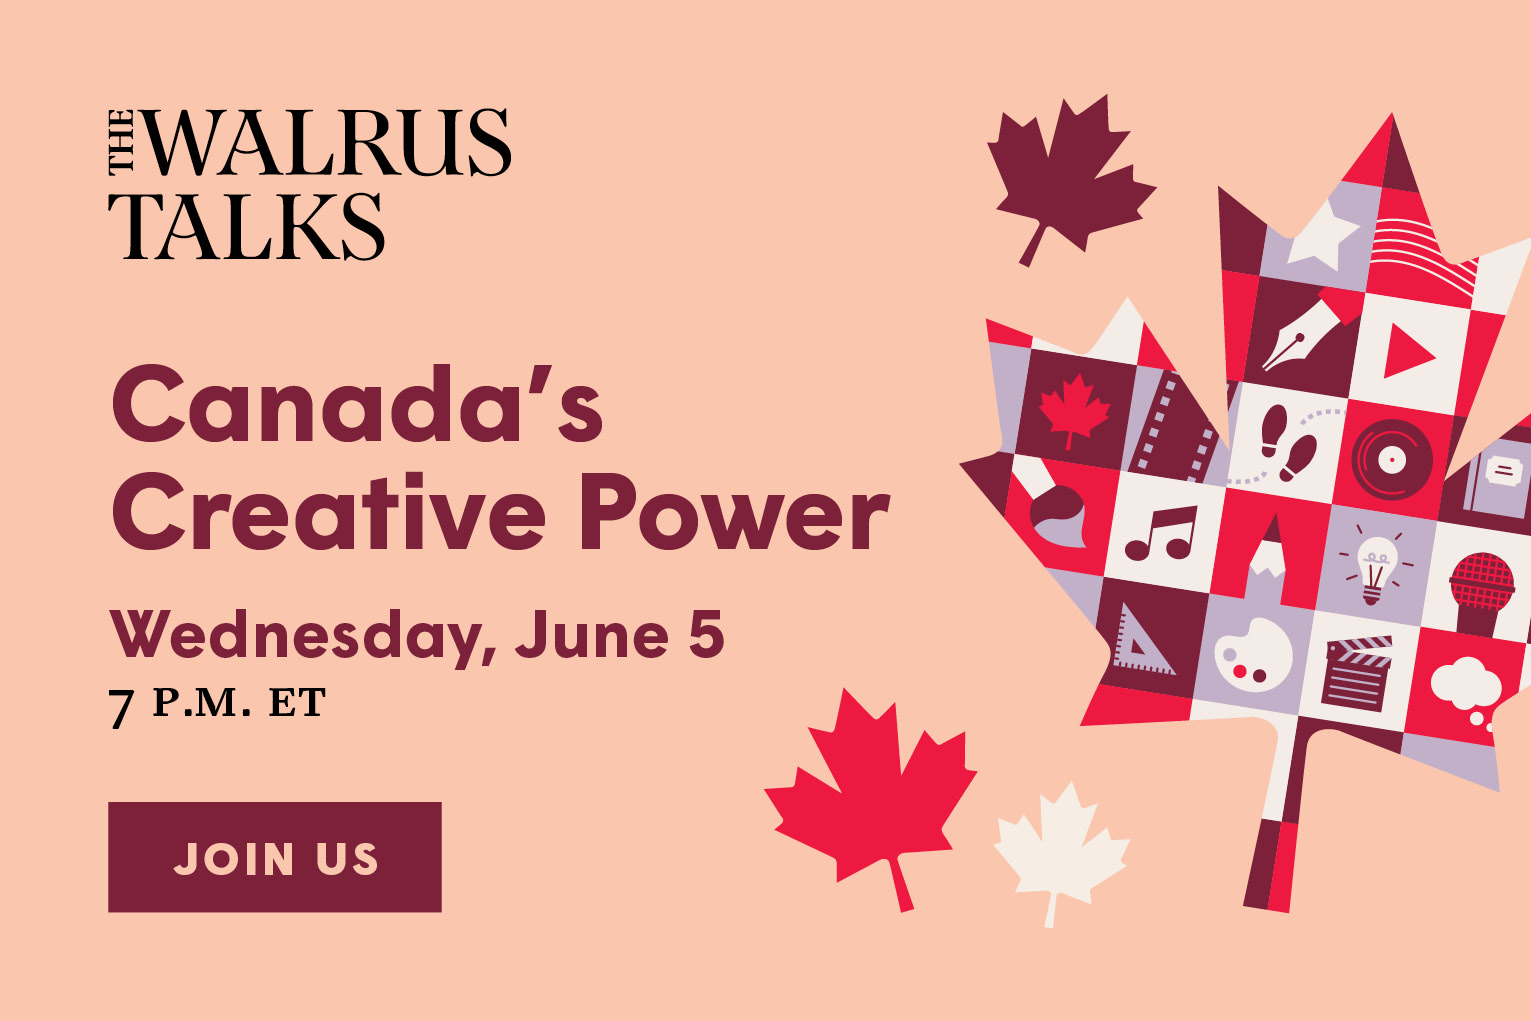 [ON SALE] The Walrus parle du pouvoir créatif du Canada